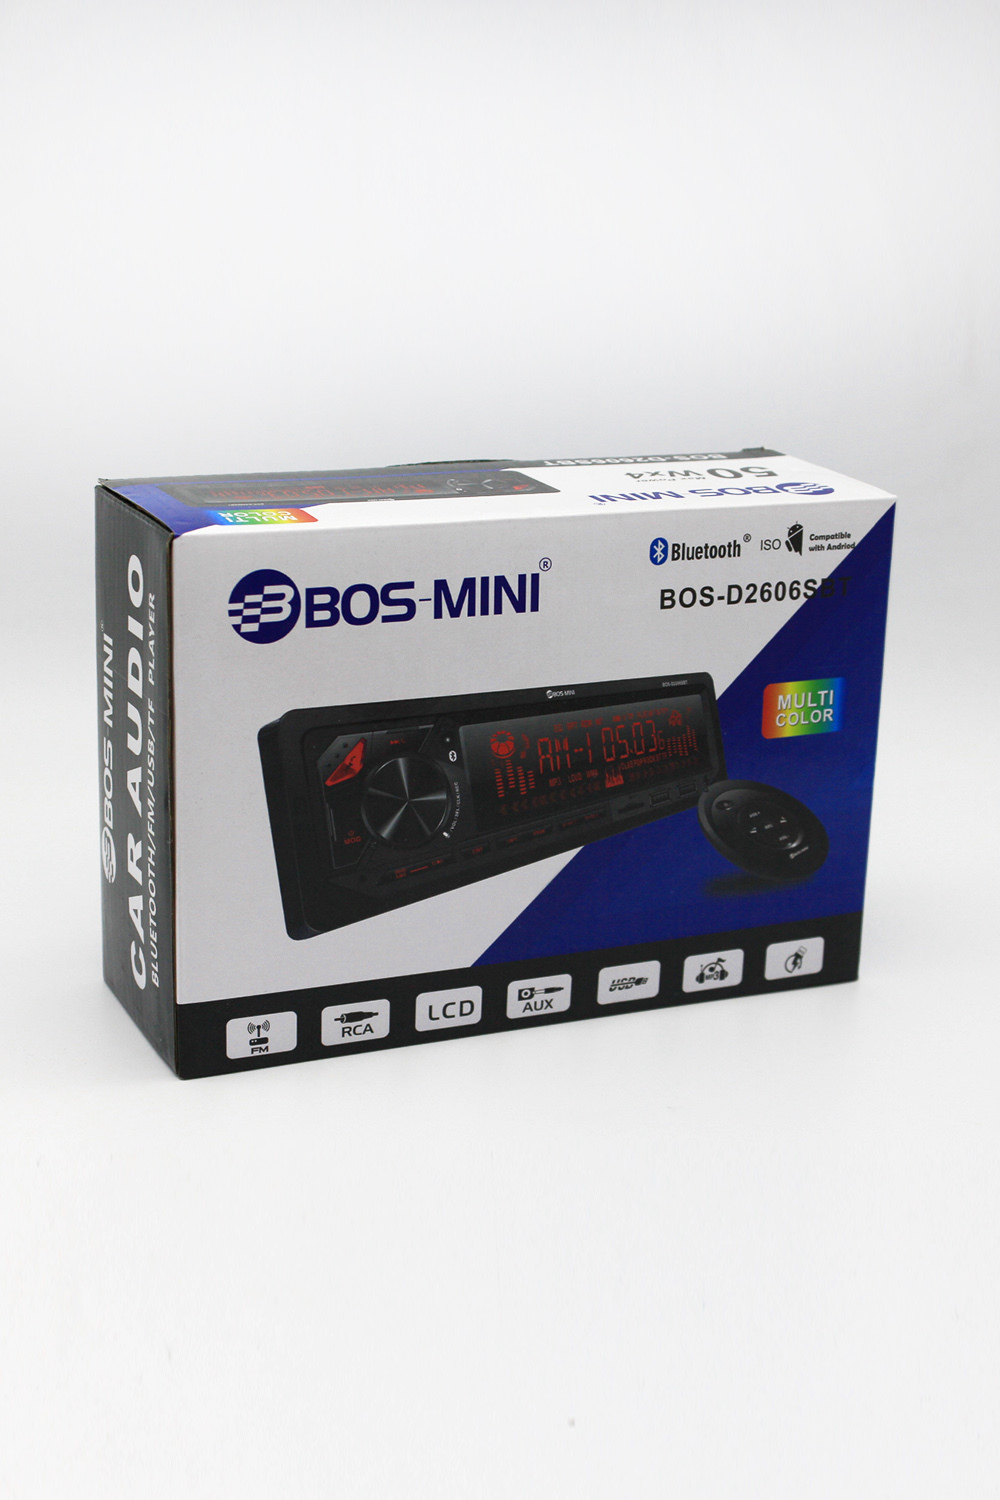  BOS-MINI 2606S BT / магнитола MP3 / автомагнитола 1 din .